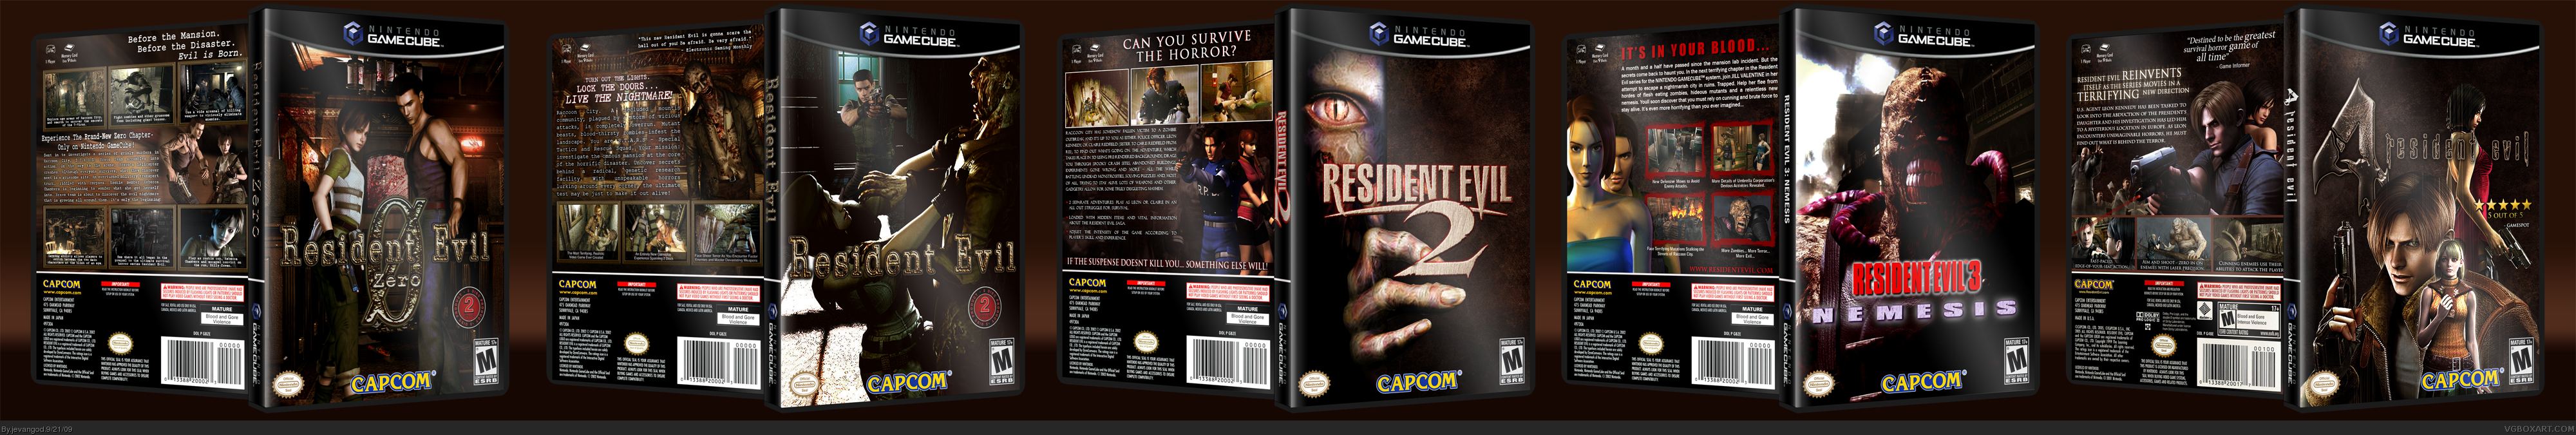 Resident Evil 0-4 box cover